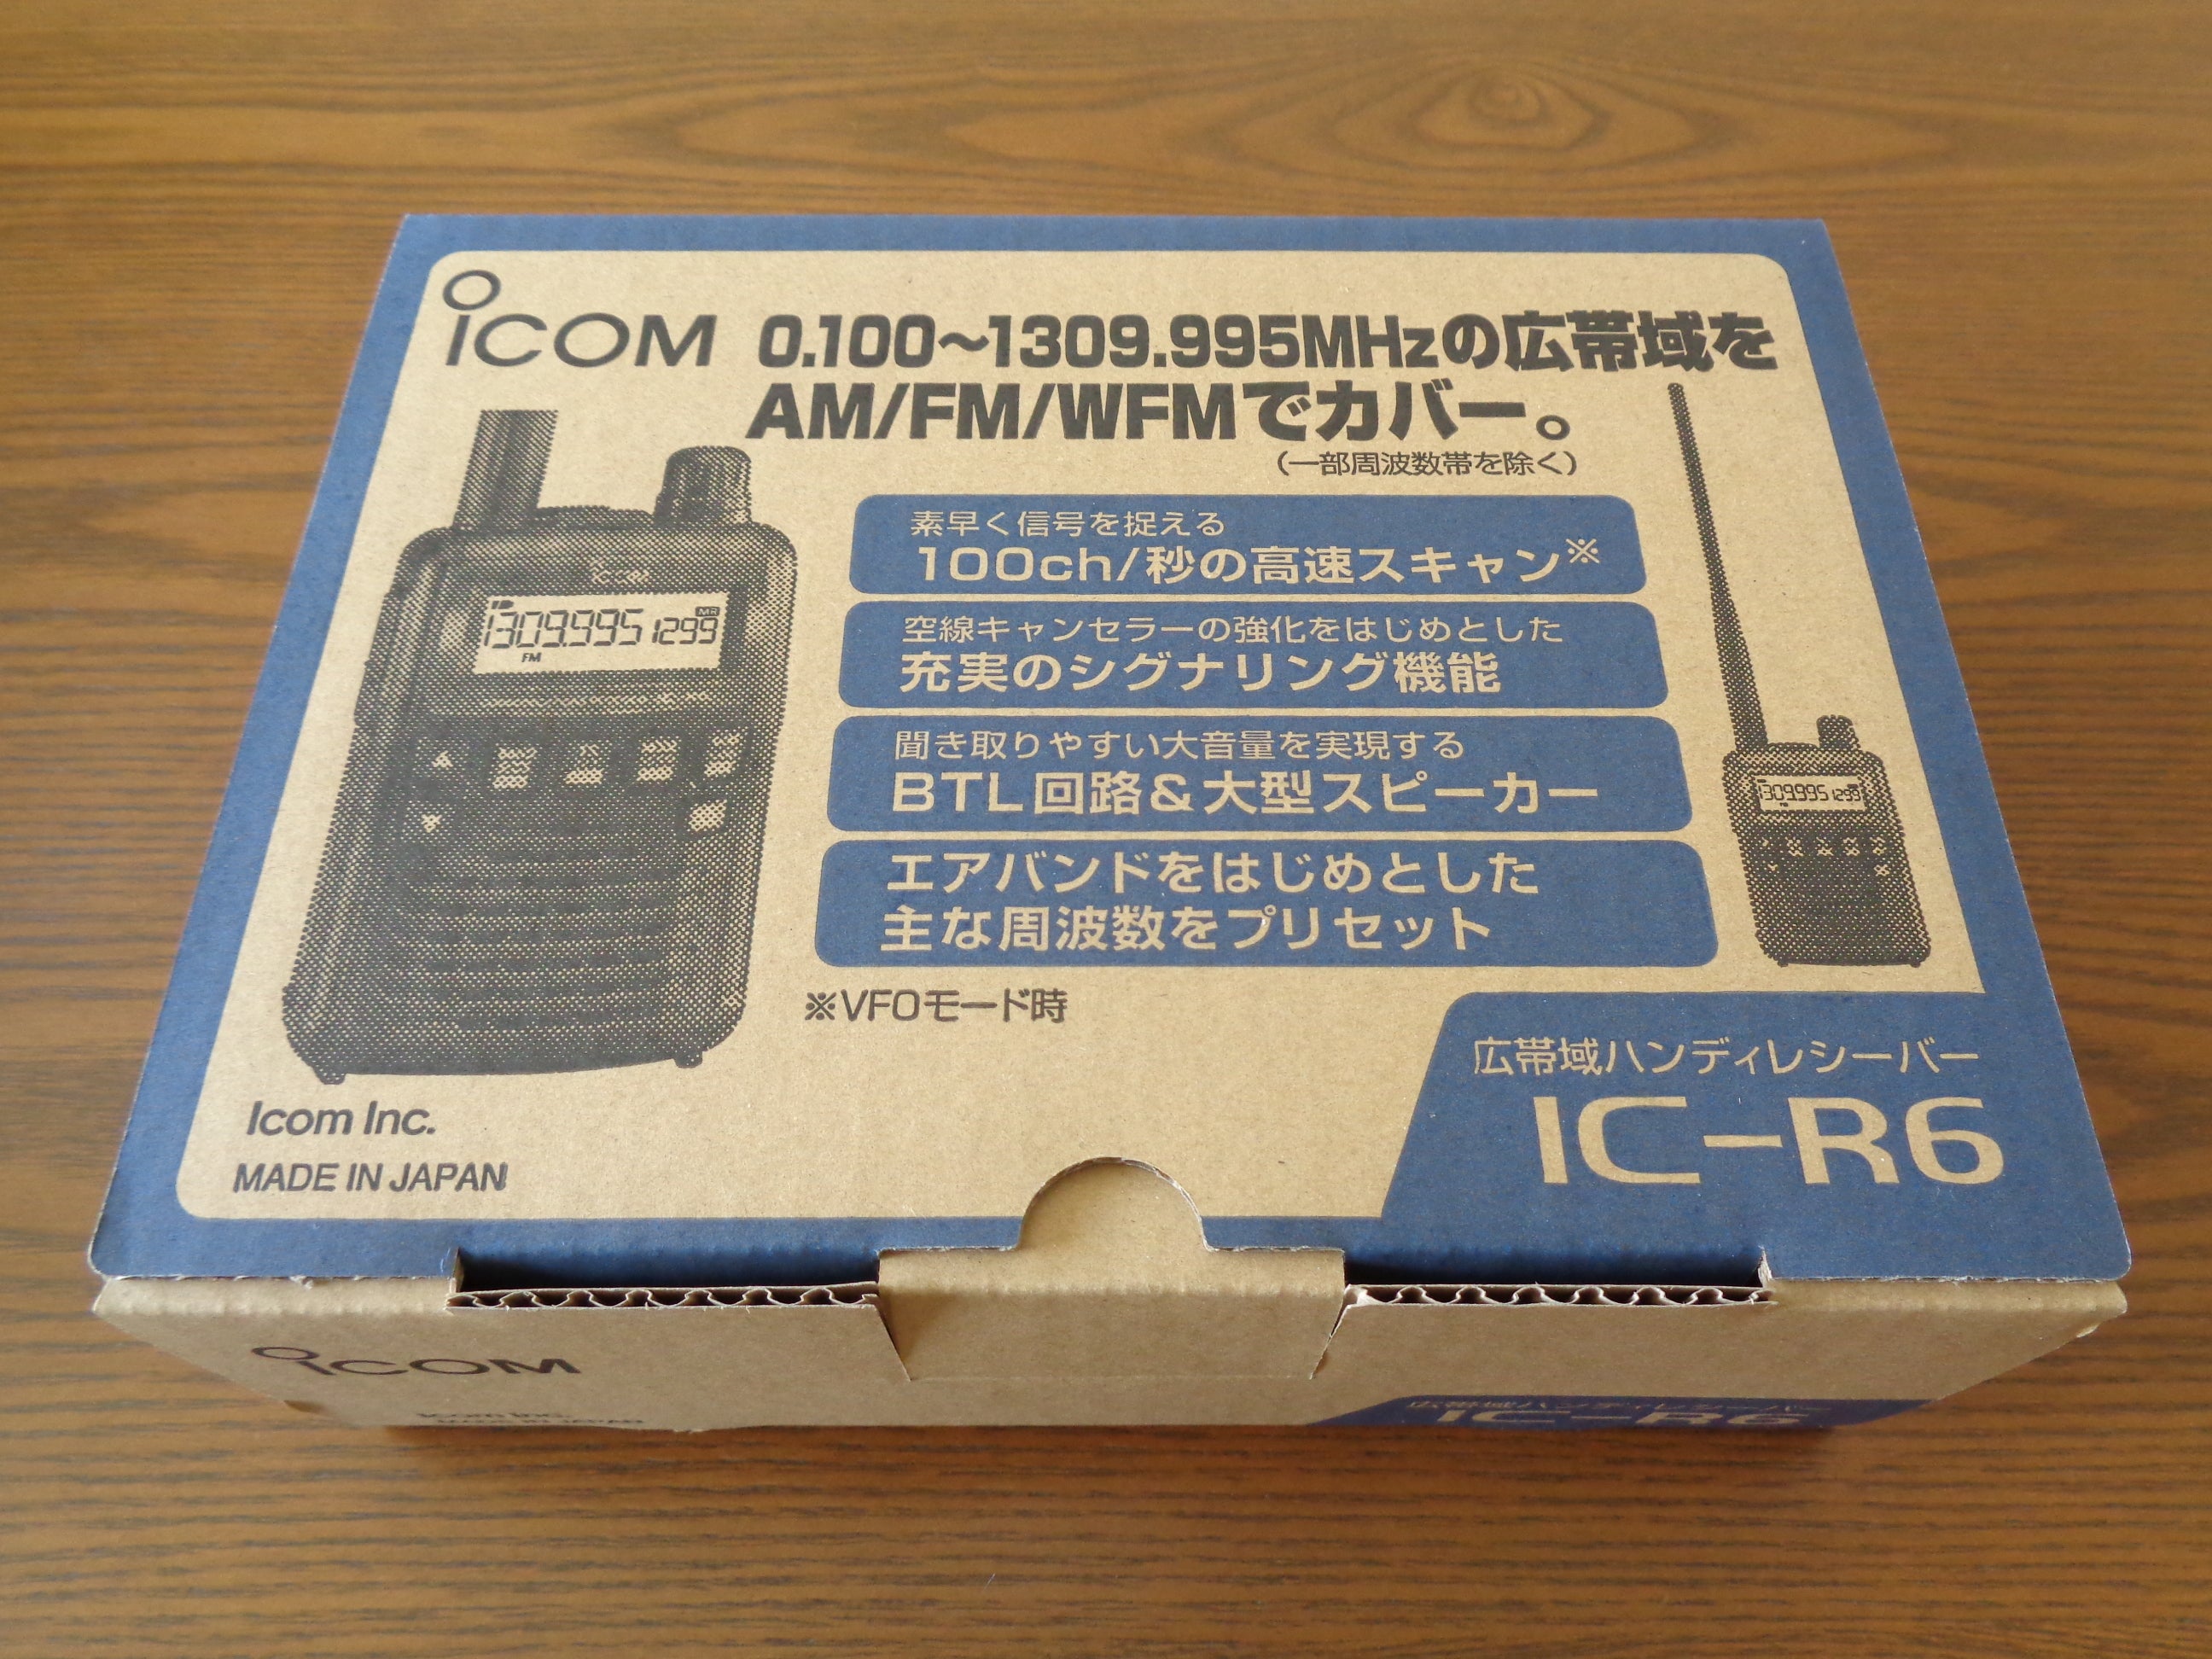 アイコム広帯域受信機 IC-R6のその後 | イシカリAA930の公式ブログ